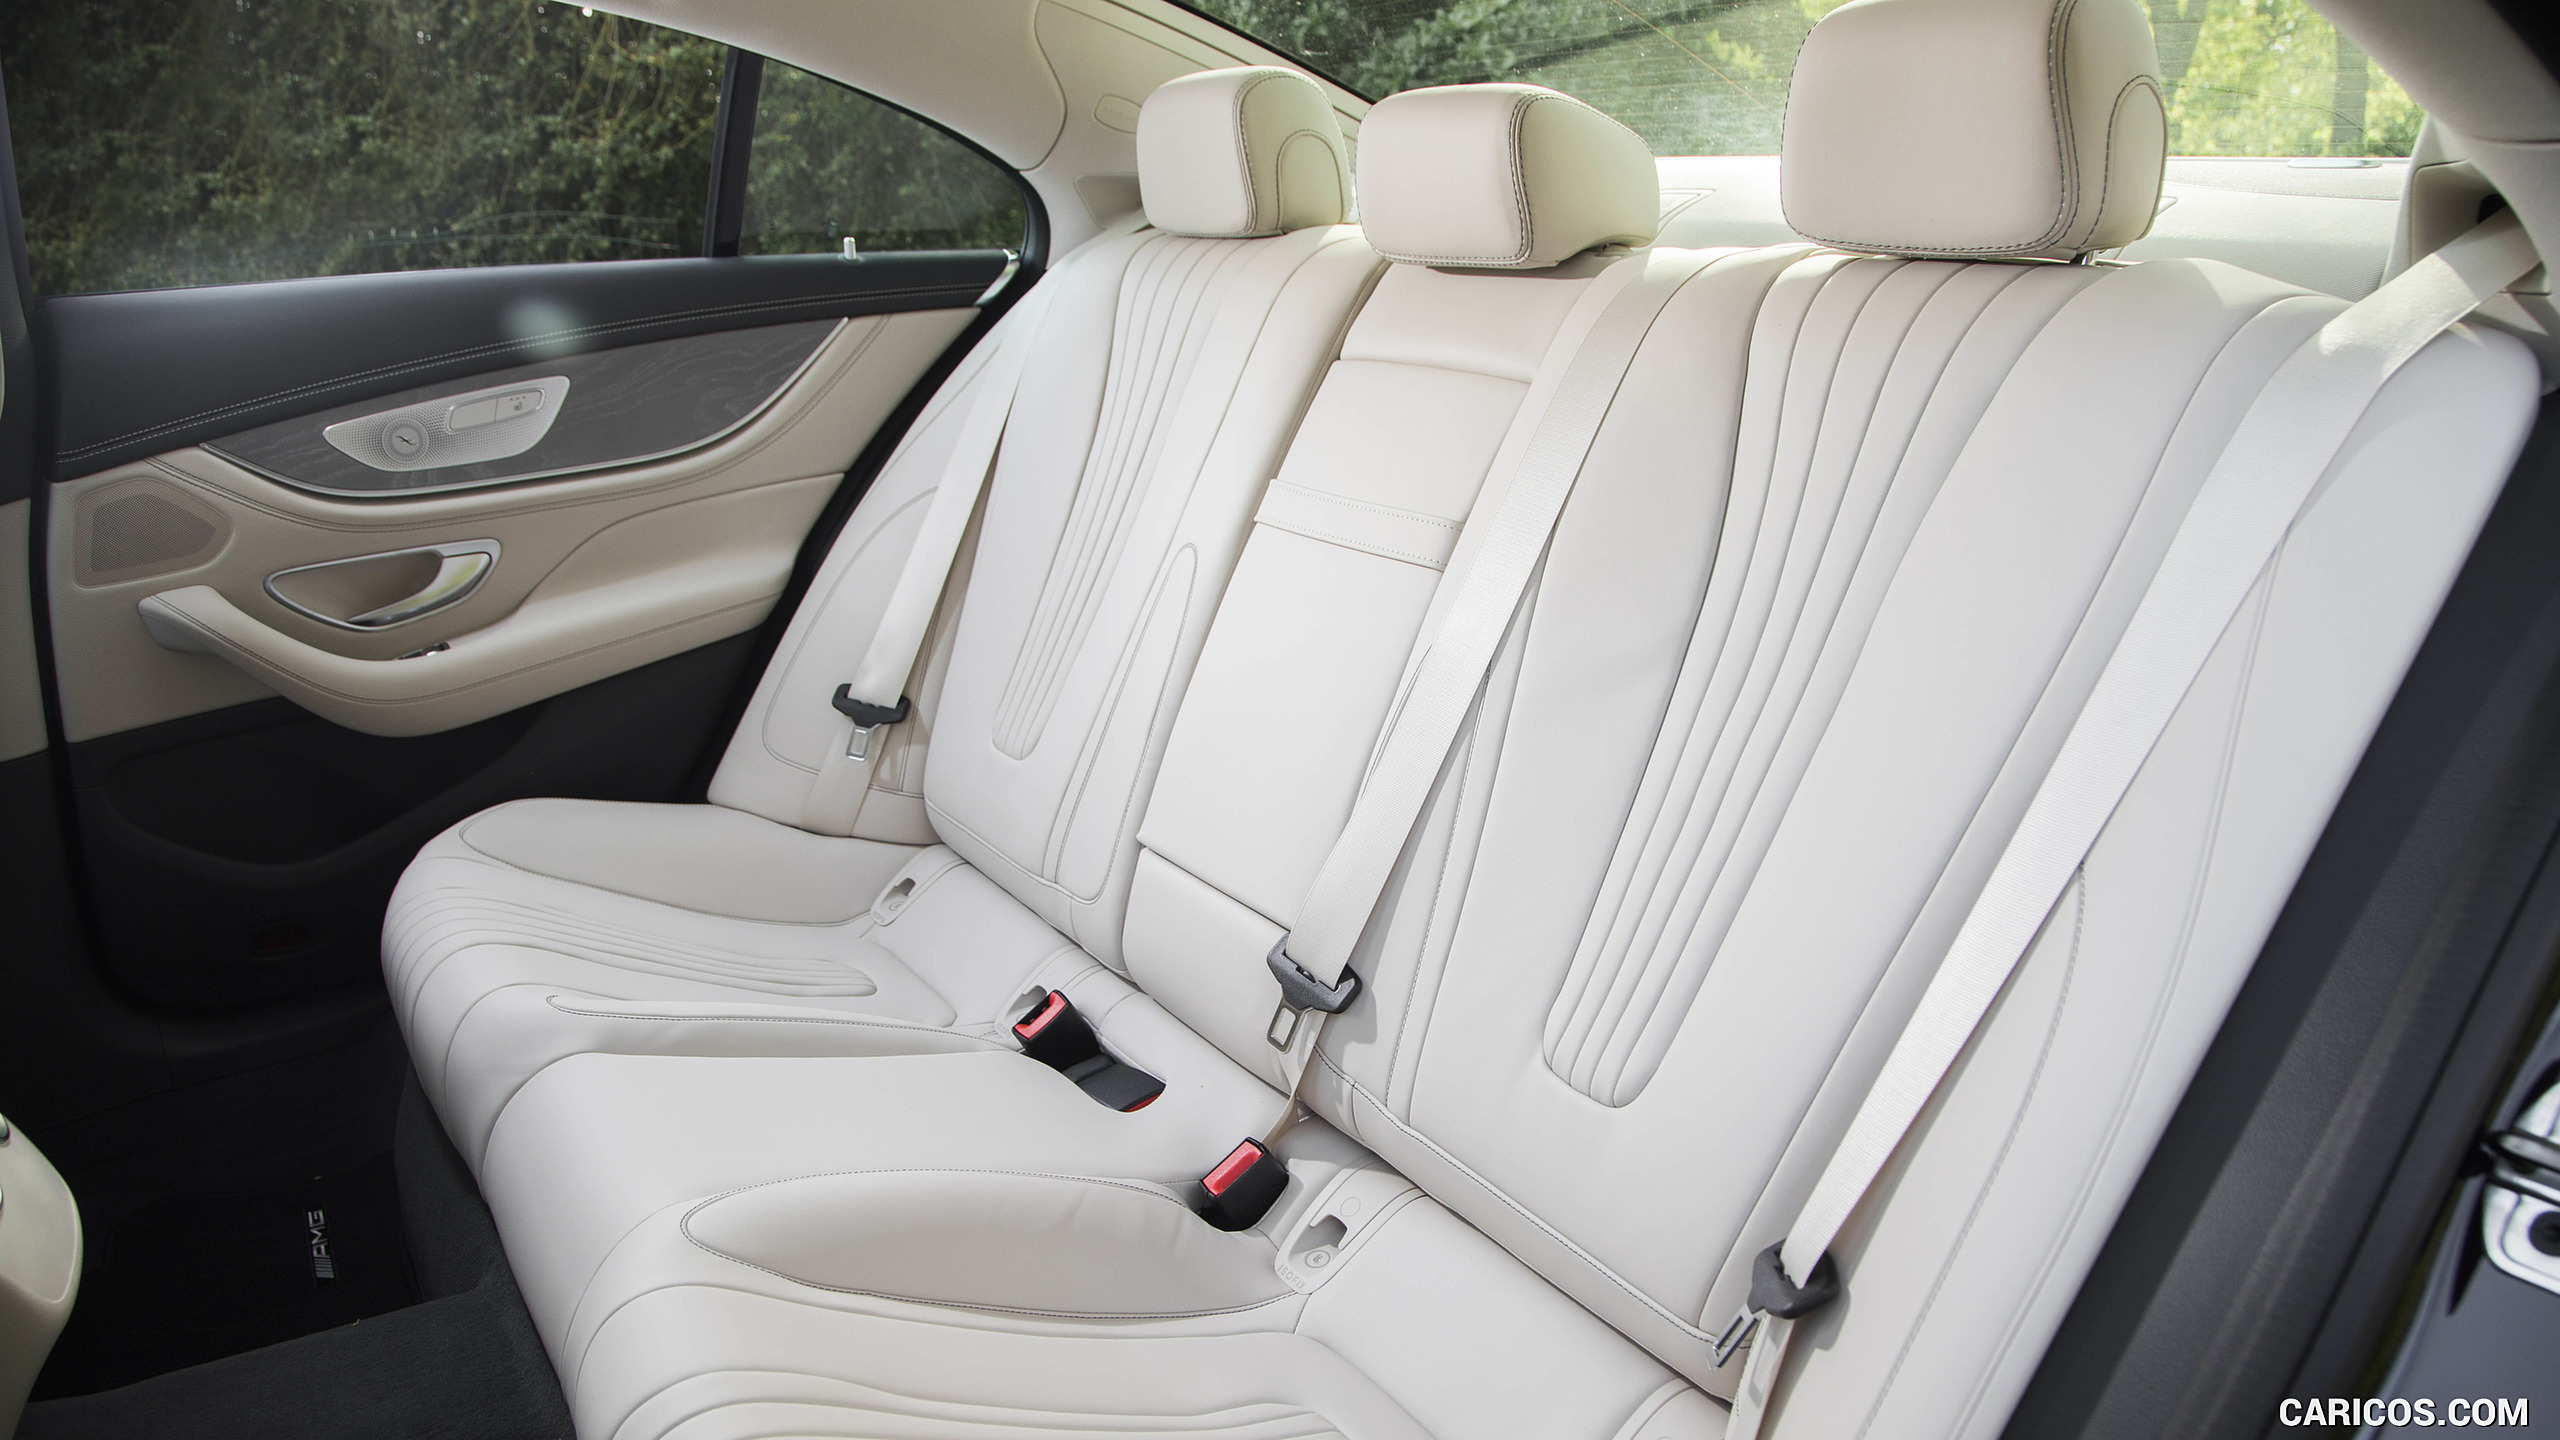 2019 Mercedes-Benz CLS 450 4MATIC (US-Spec) - Interior, Rear Seats, #178 of 231